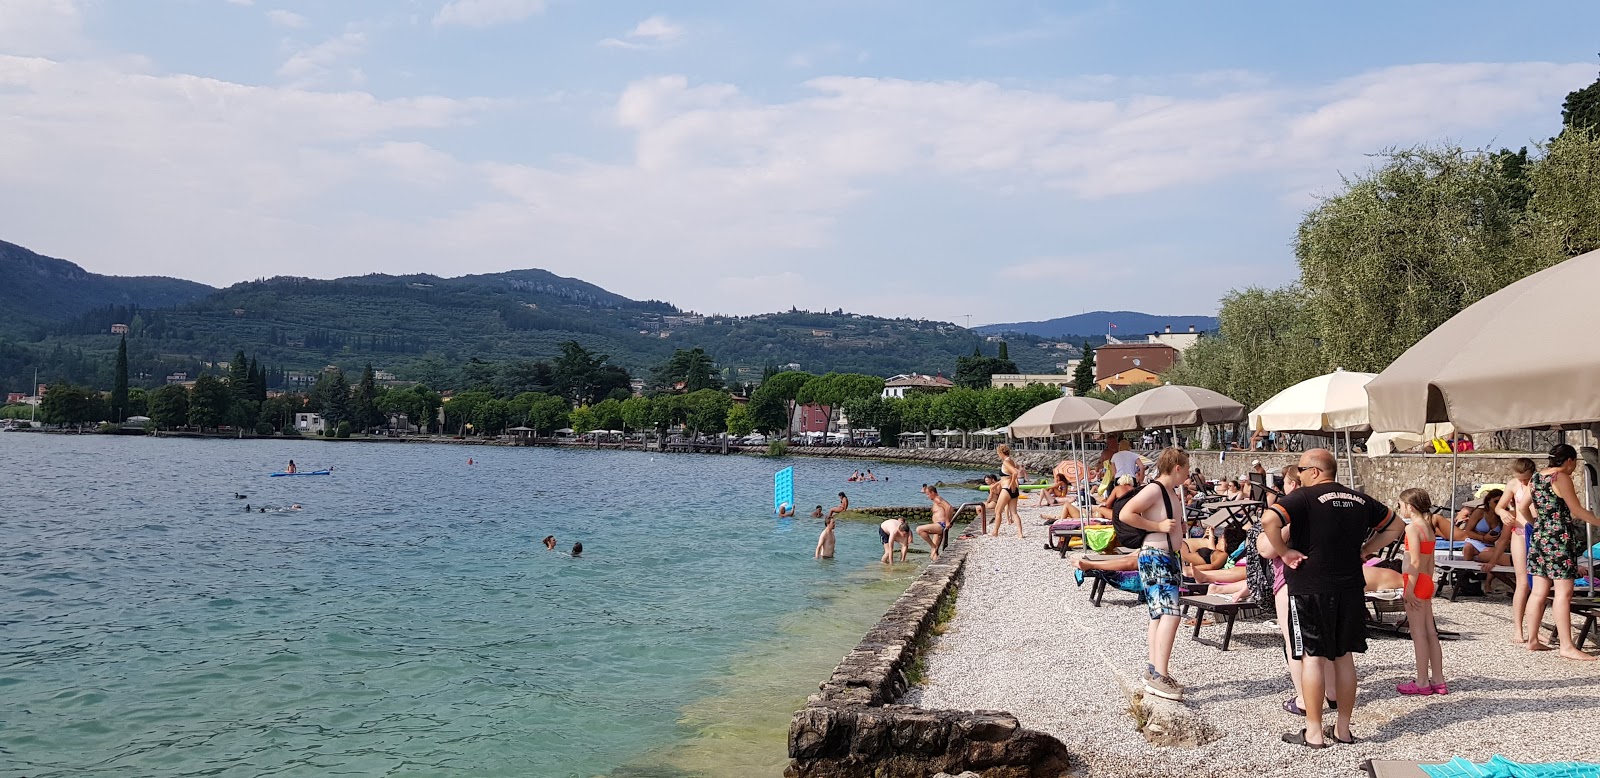 Photo de Spiaggia La Cavalla Garda - endroit populaire parmi les connaisseurs de la détente